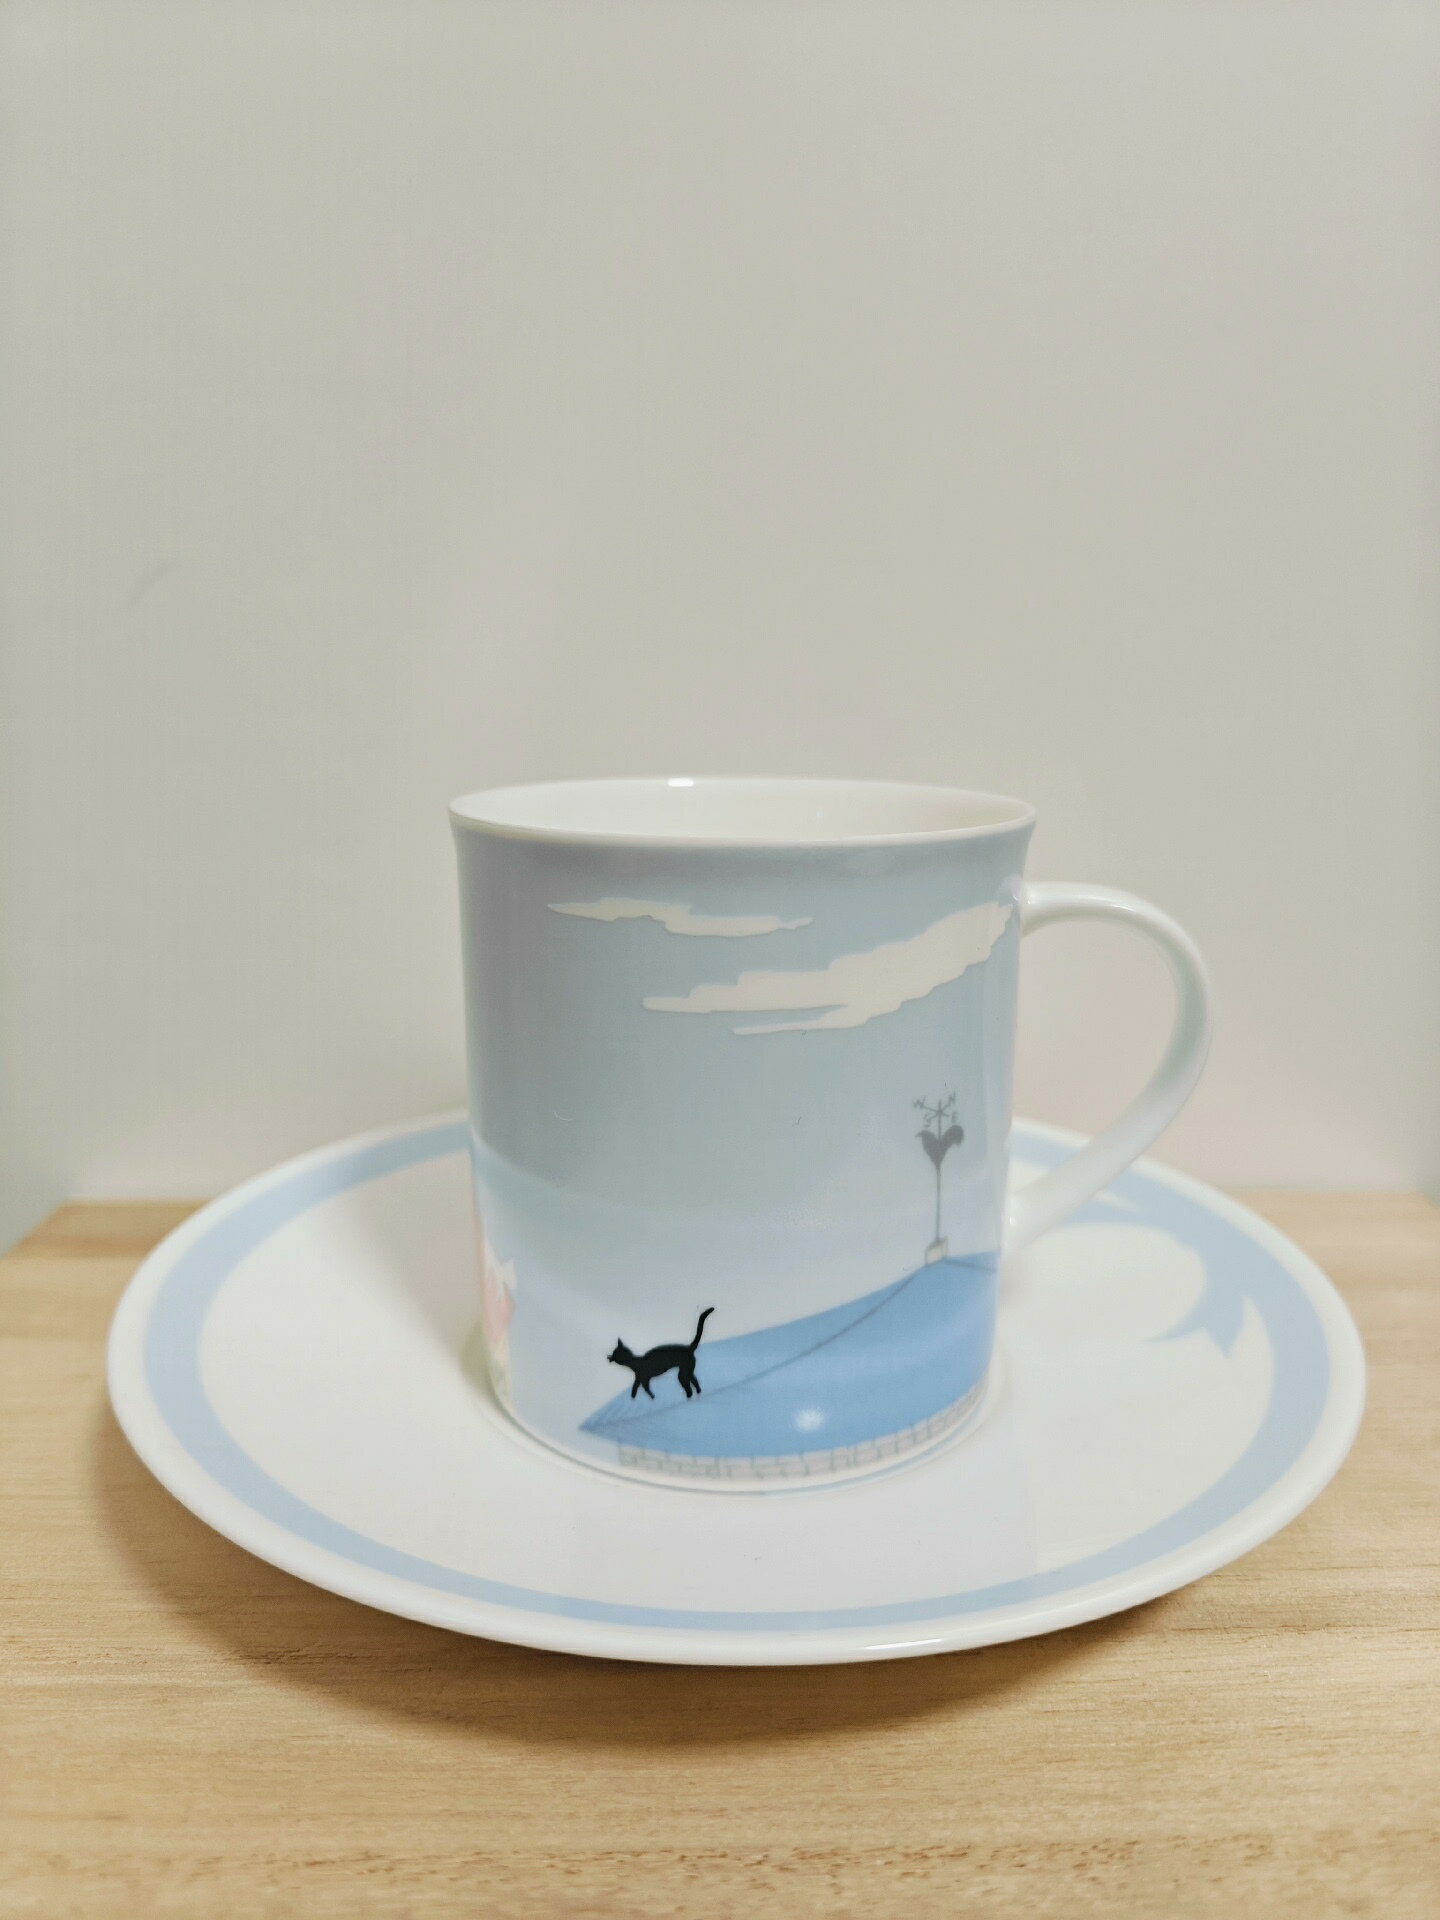 日本回流則武noritake咖啡杯 貓咪圖案很可愛